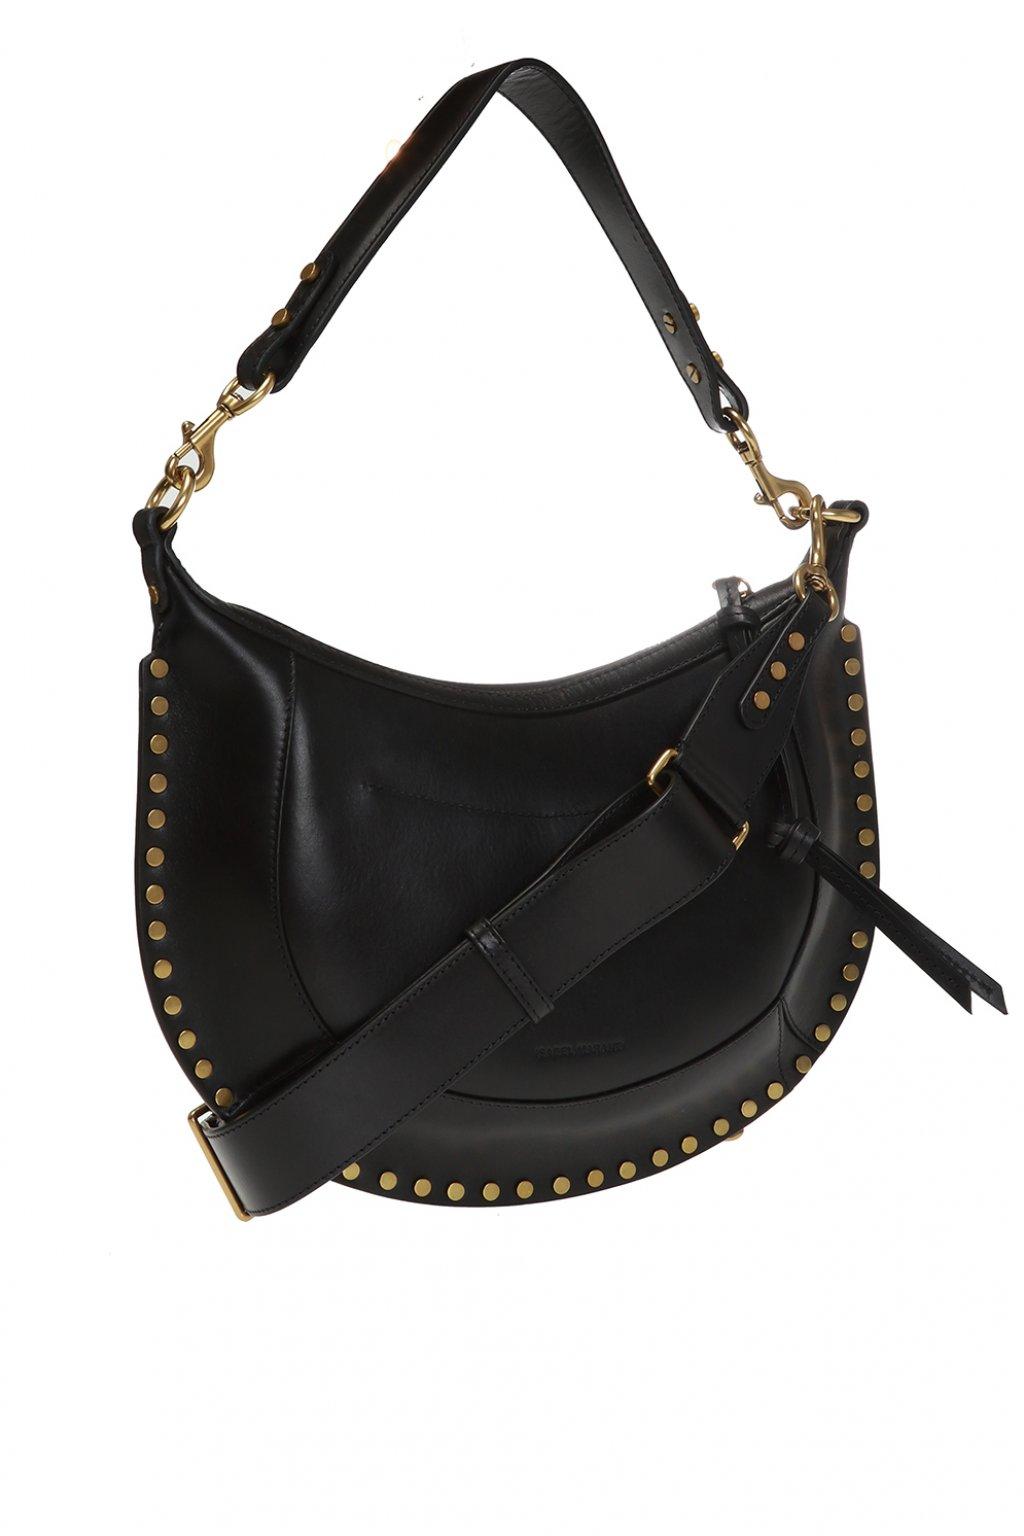 Isabel Marant Leather 'naoko' Shoulder Bag in Black - Lyst